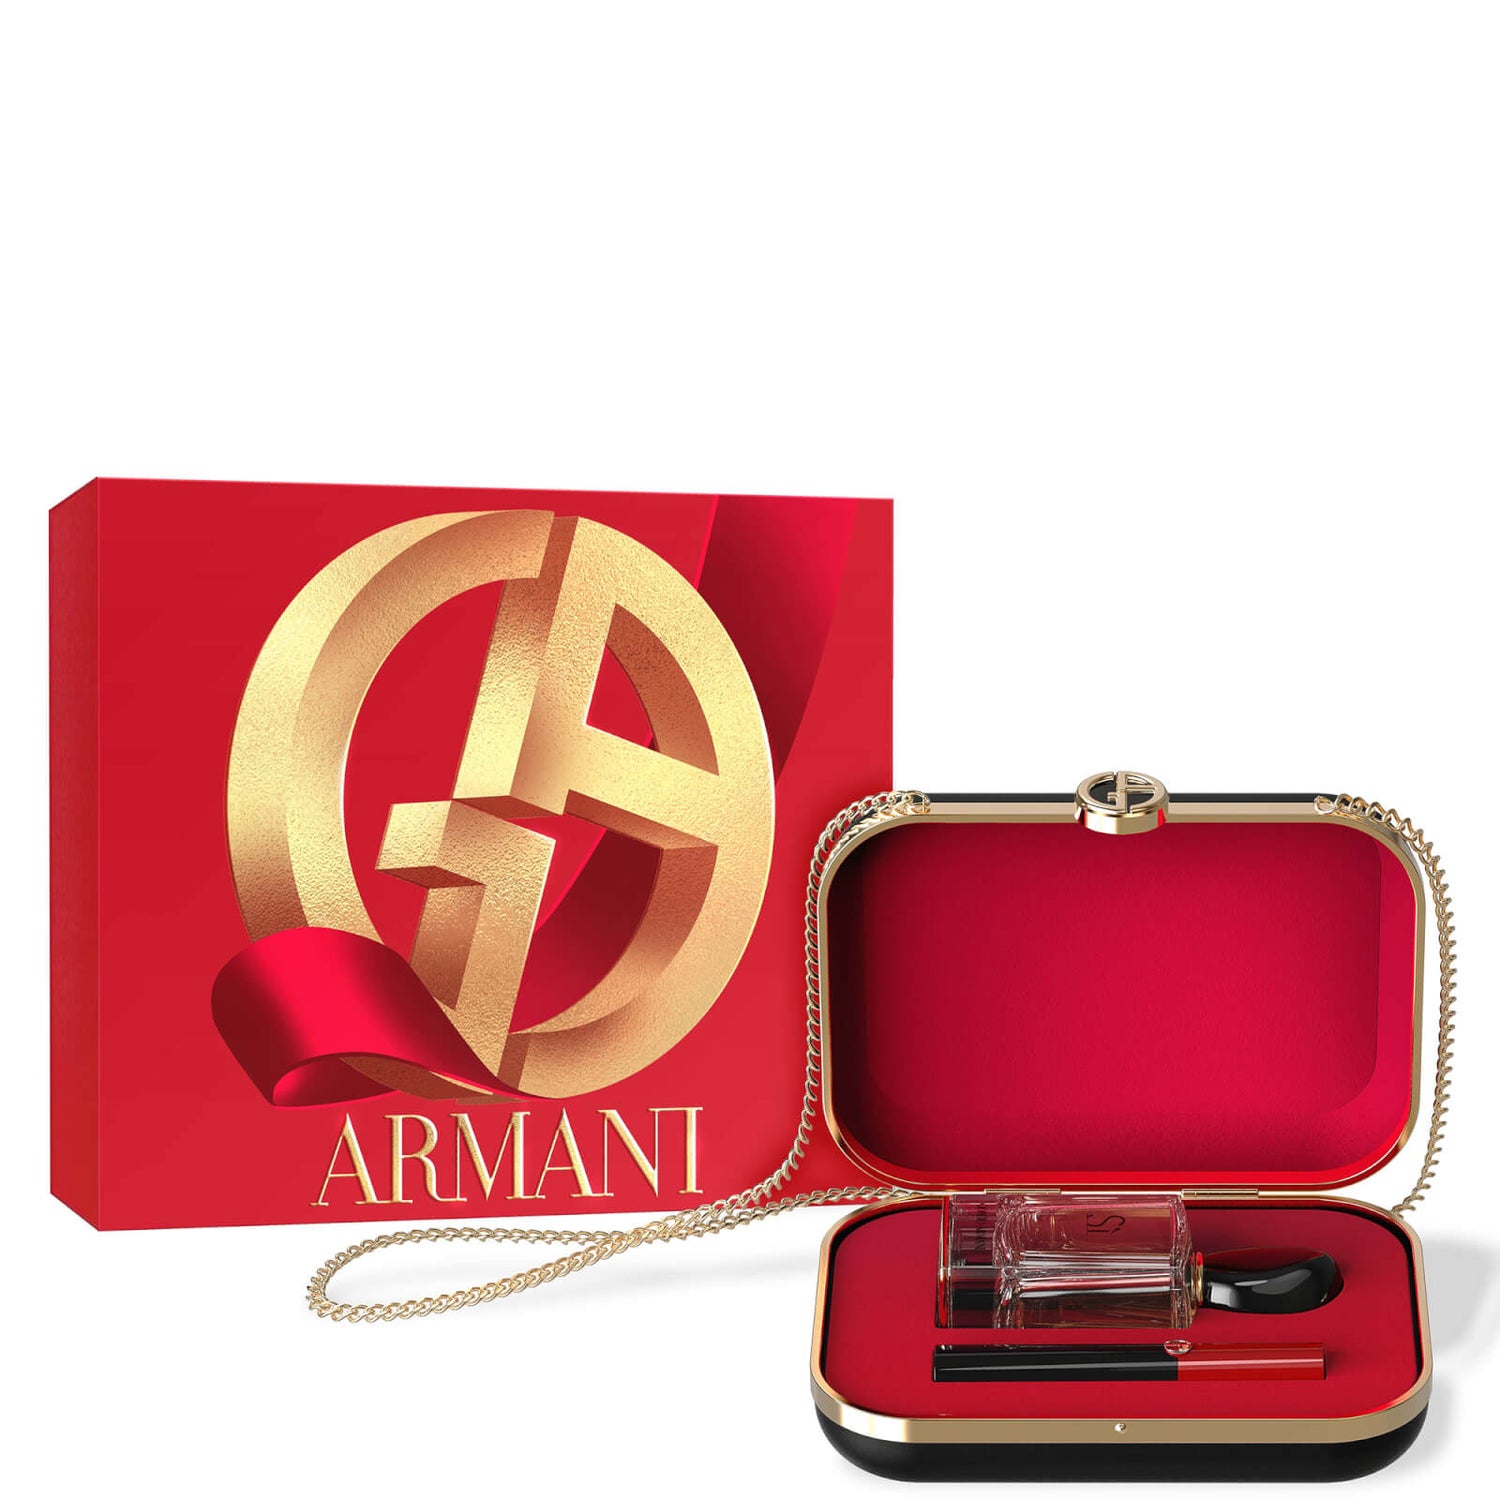 Armani Si Eau de Parfum 50ml, Lip Power - Shade 104 and Pouch (Worth £127.00)